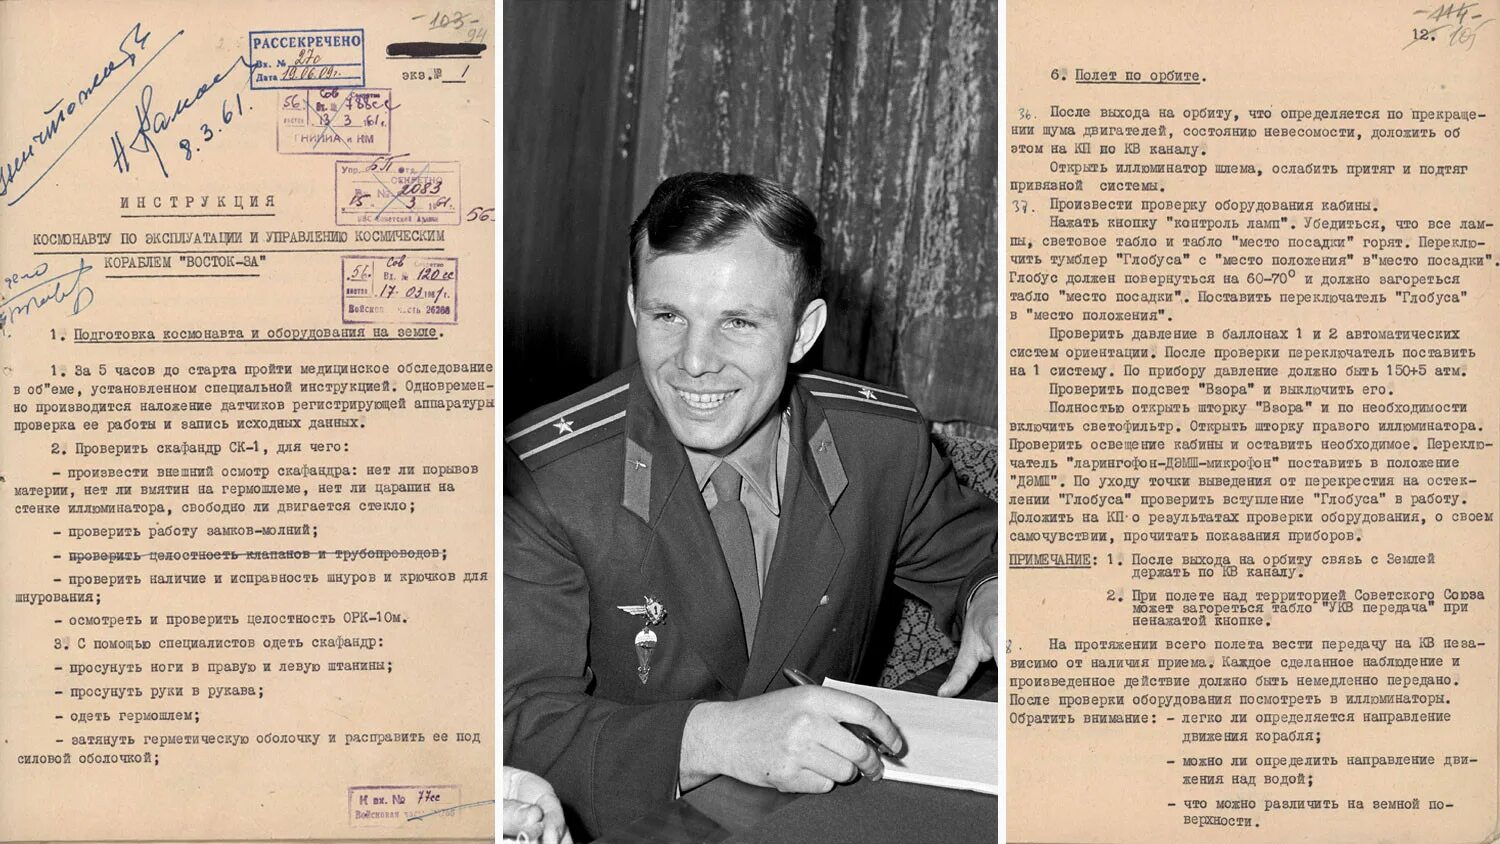 Второй космонавт после гагарина полетел в космос. Газеты 1961 года о первом полете в космос. 1961 Год полет в космос Гагарина. Гагарин полет в космос 1961 газеты.